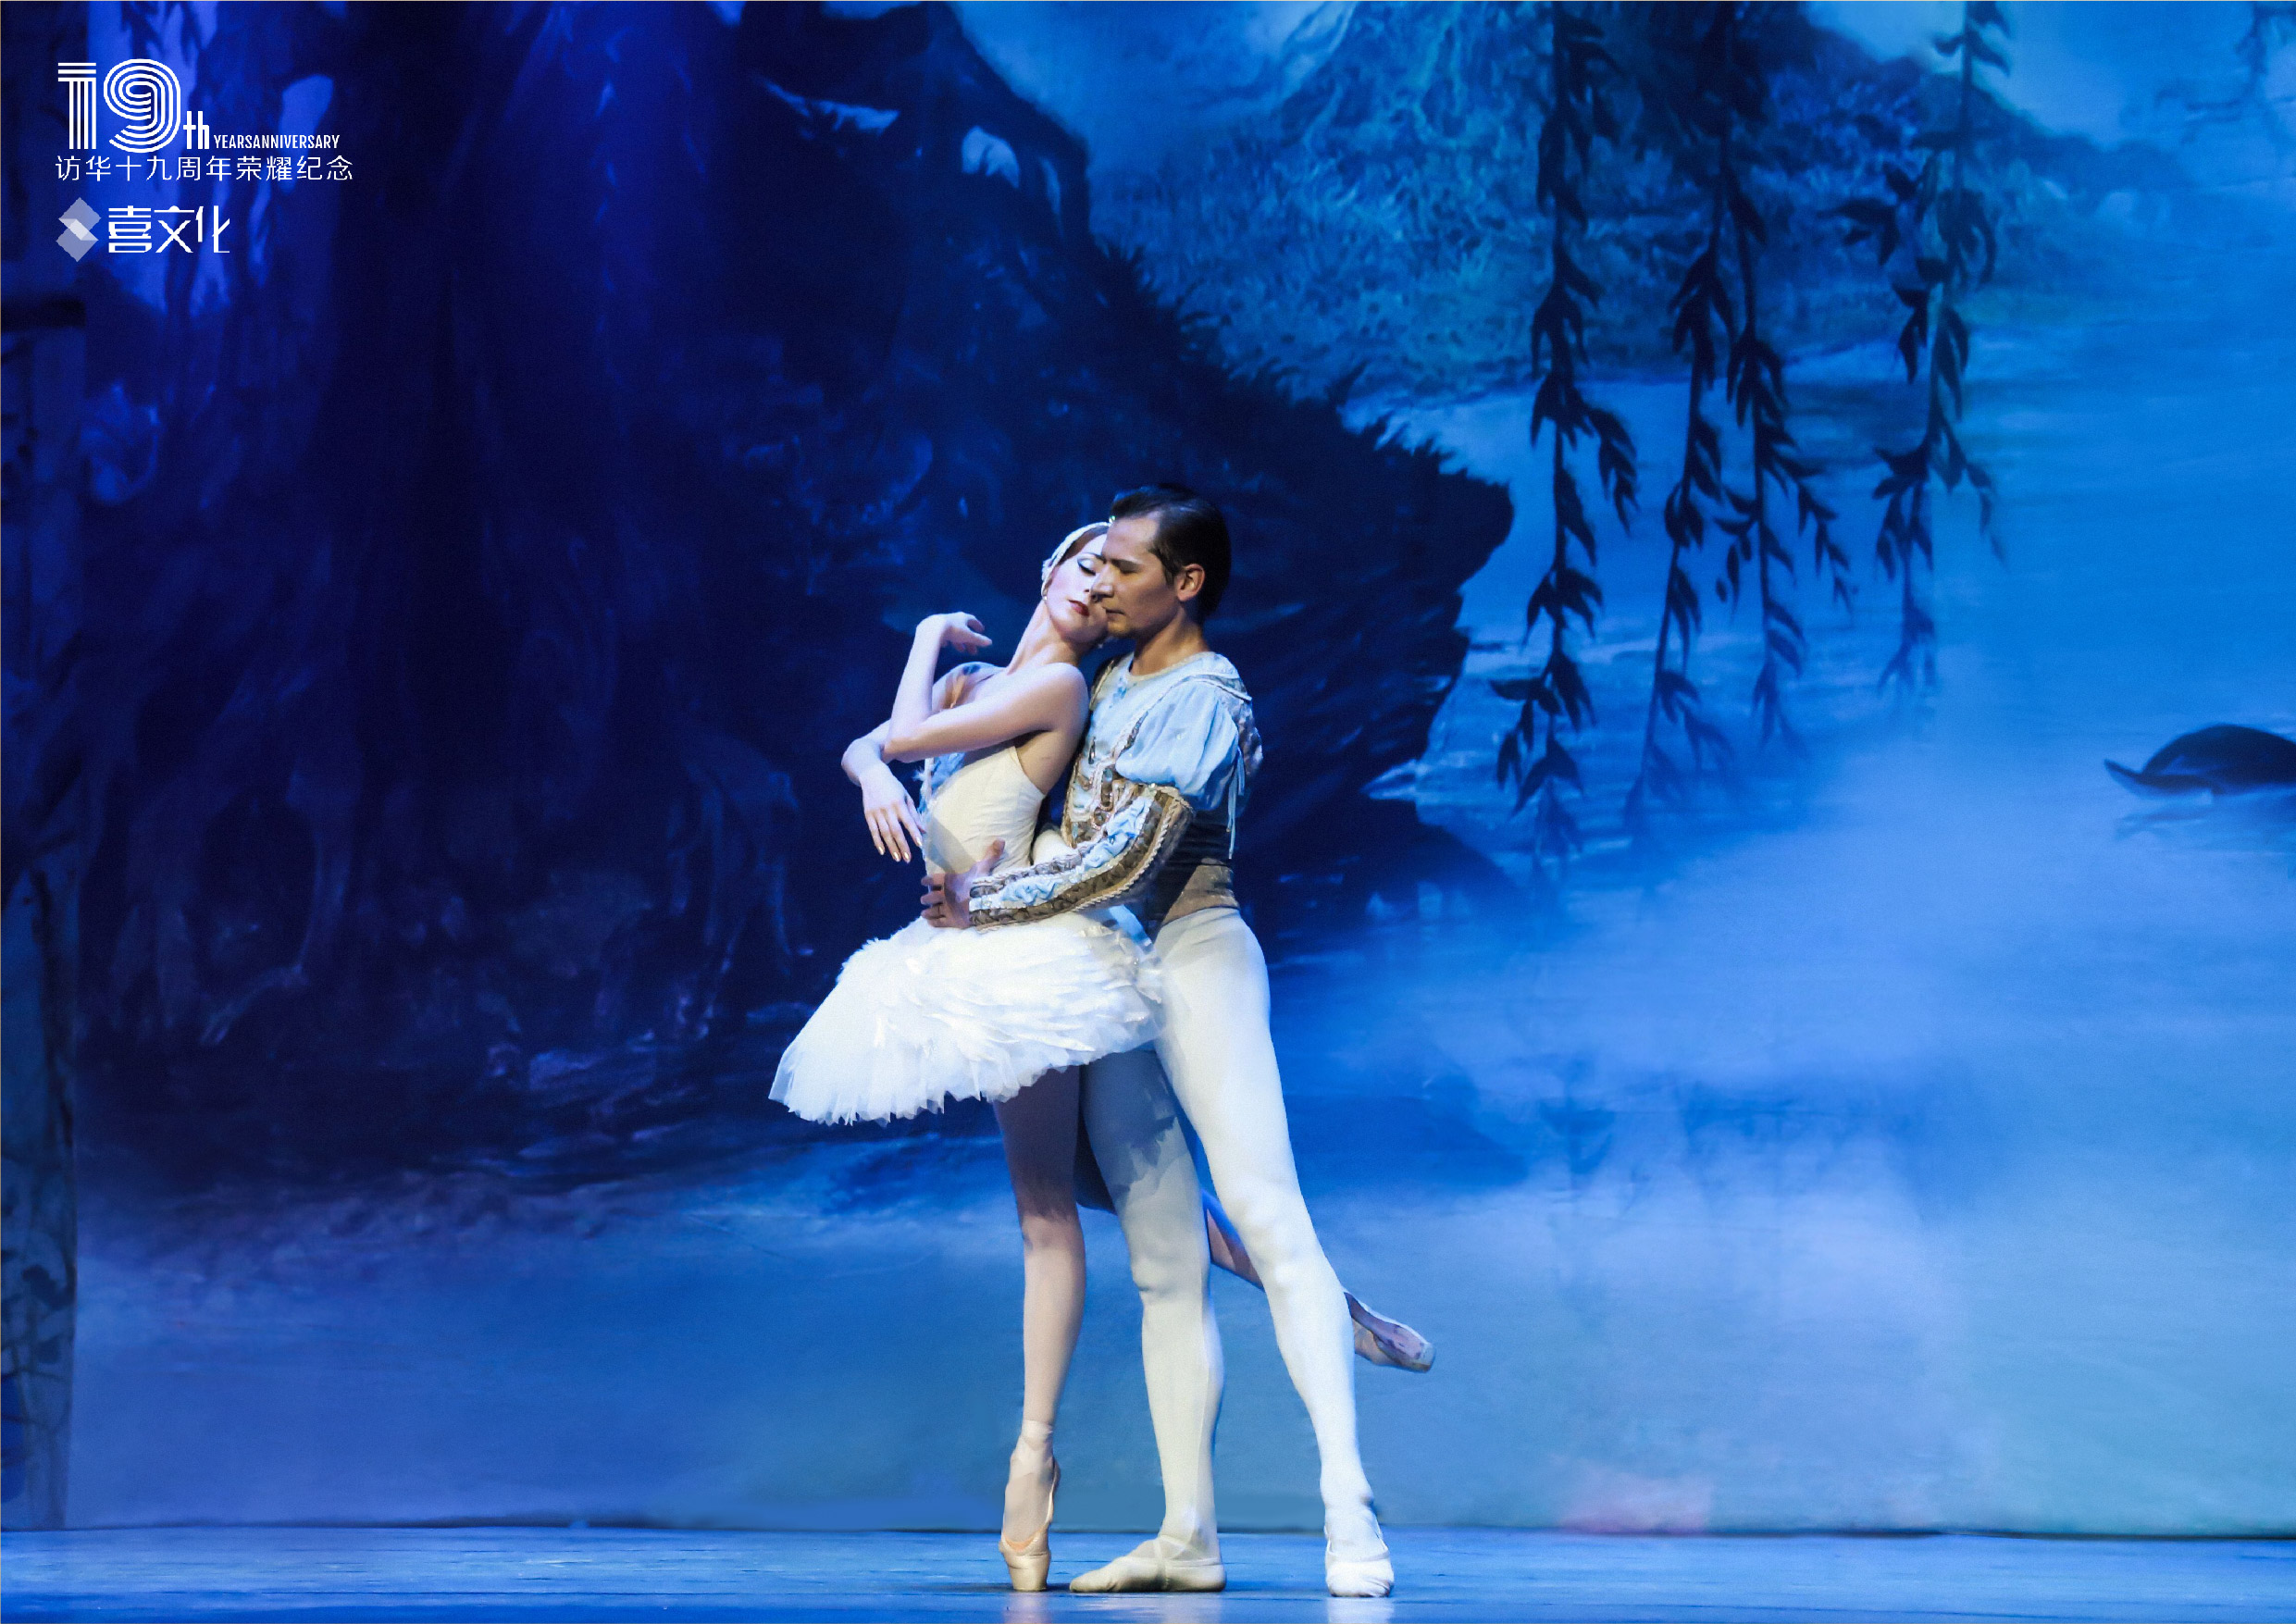 连续访华19周年品质纪念—俄罗斯皇家芭蕾舞团《天鹅湖》2019中国巡演·苏州站